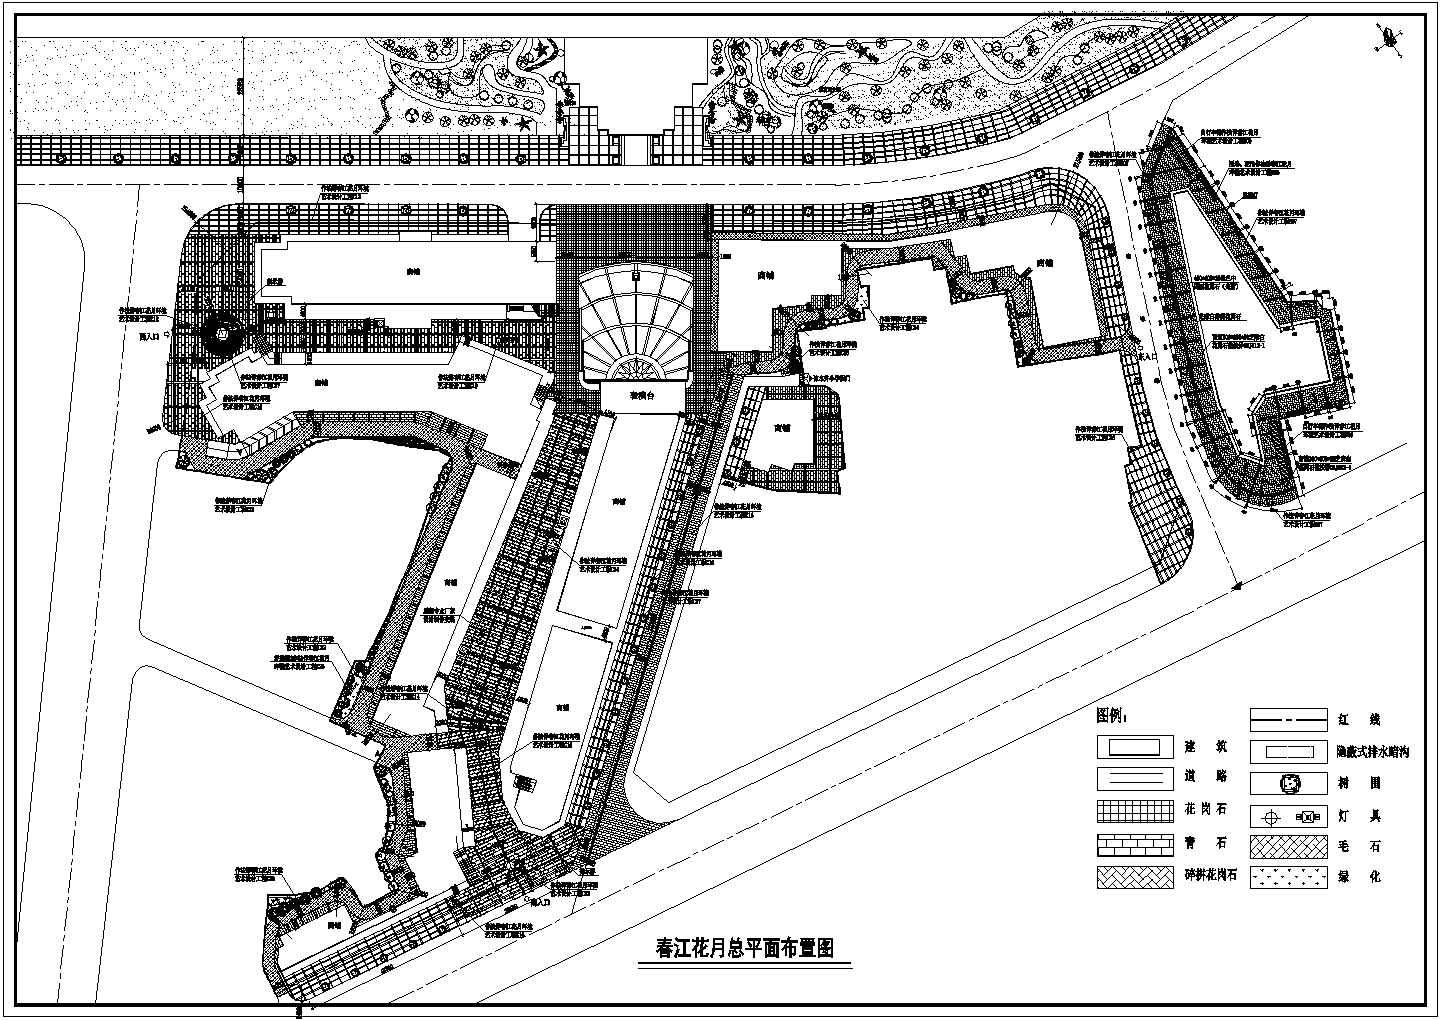 某地仿古商业街景观规划设计施工图